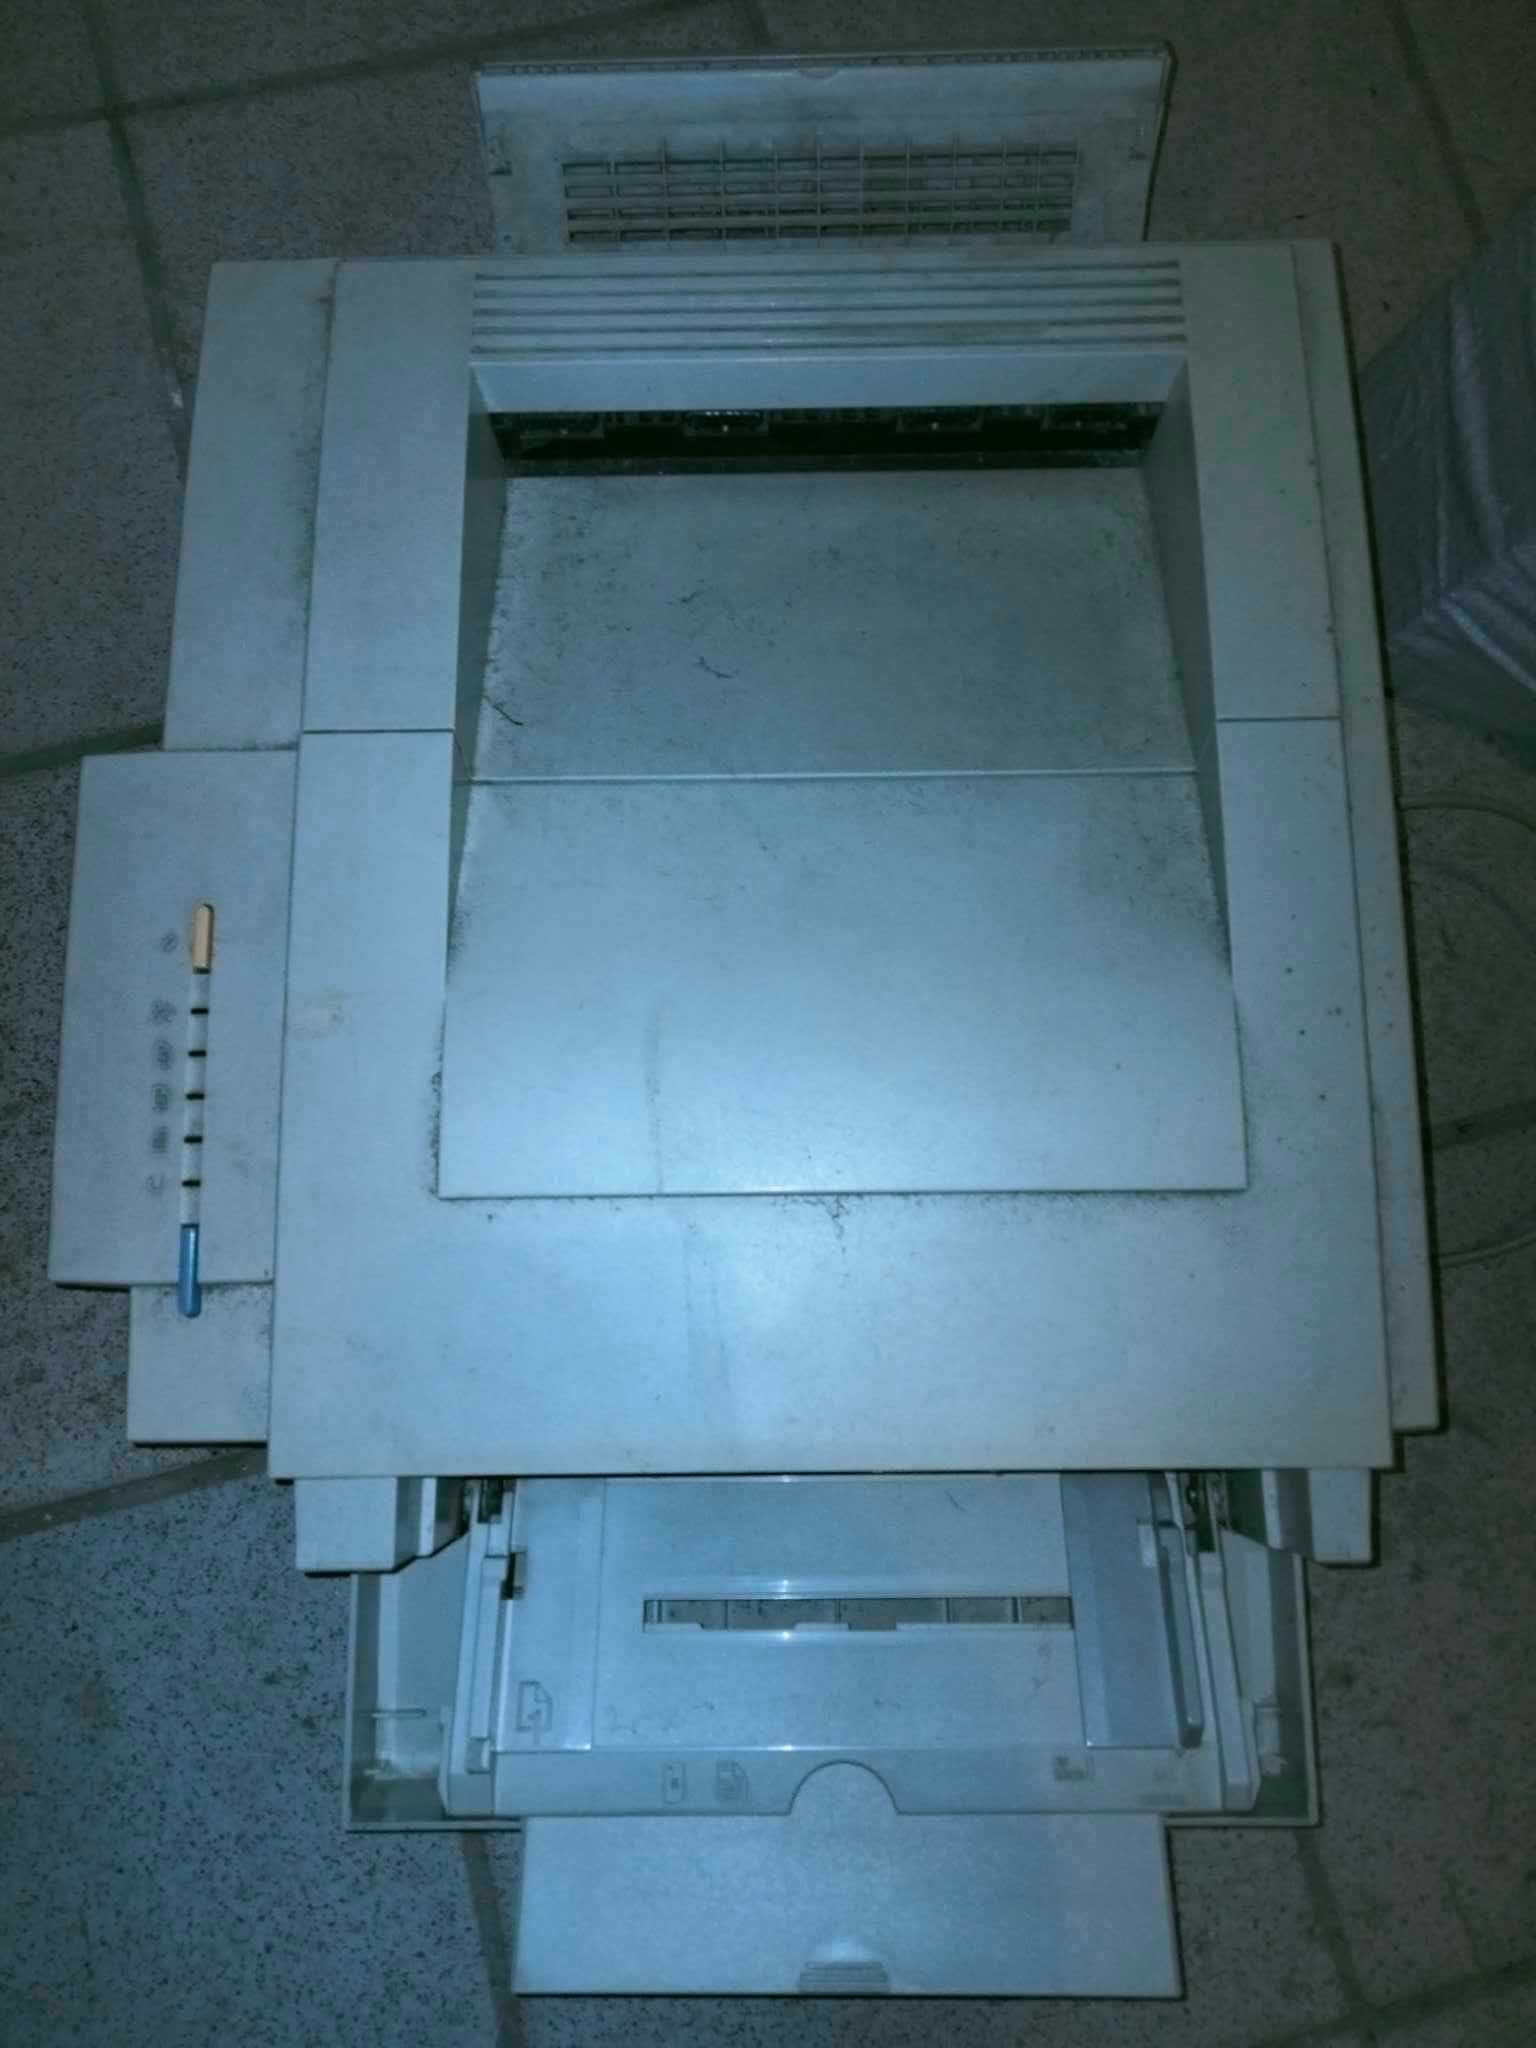 HP® LaserJet 5p Printer (C3150A)